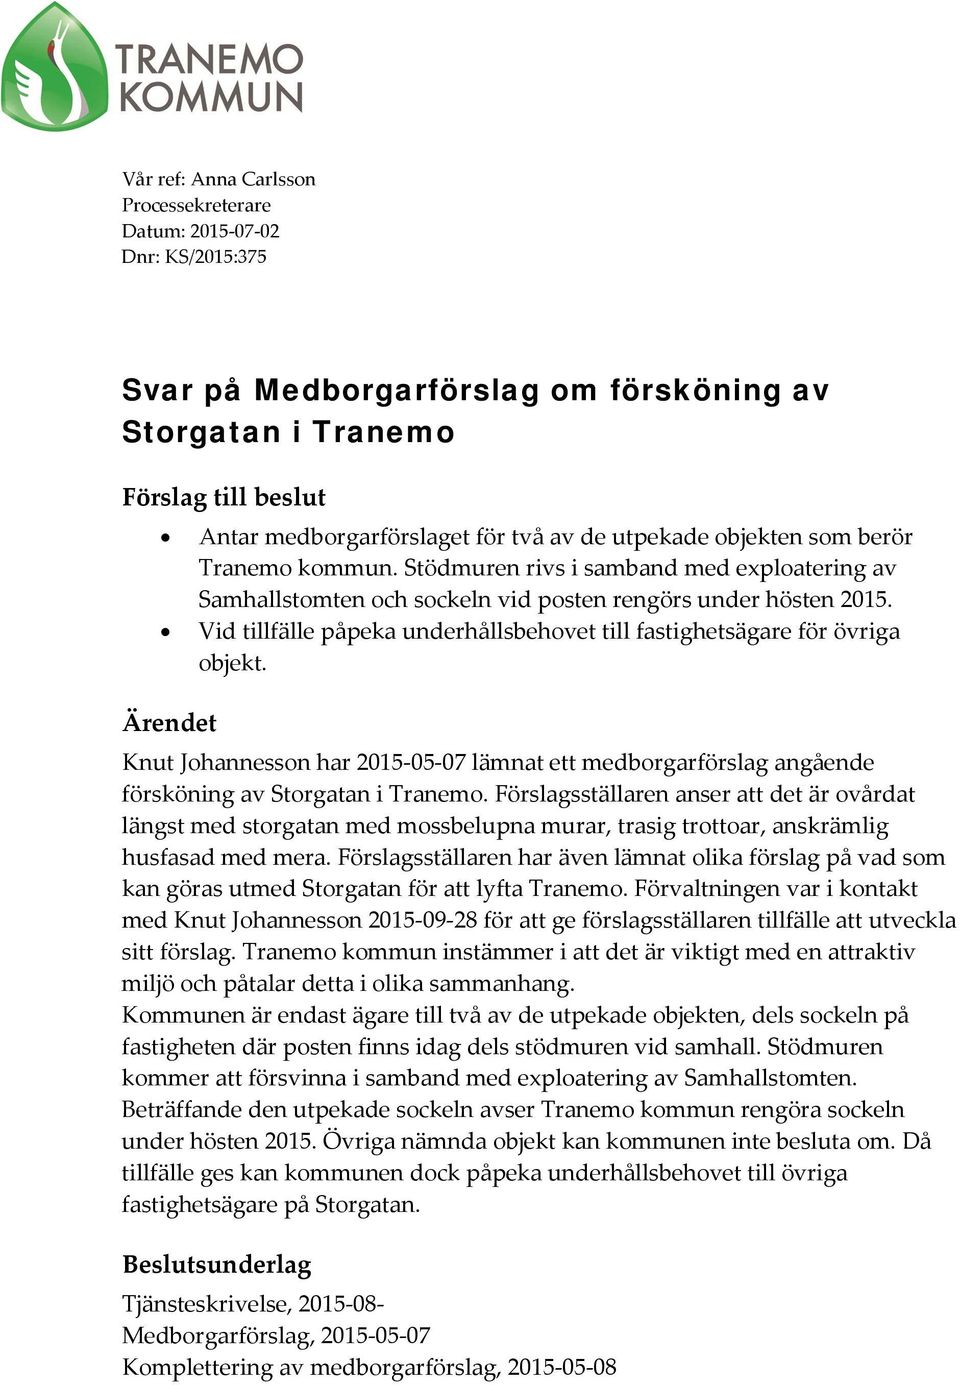 Vid tillfälle påpeka underhållsbehovet till fastighetsägare för övriga objekt. Ärendet Knut Johannesson har 2015-05-07 lämnat ett medborgarförslag angående försköning av Storgatan i Tranemo.